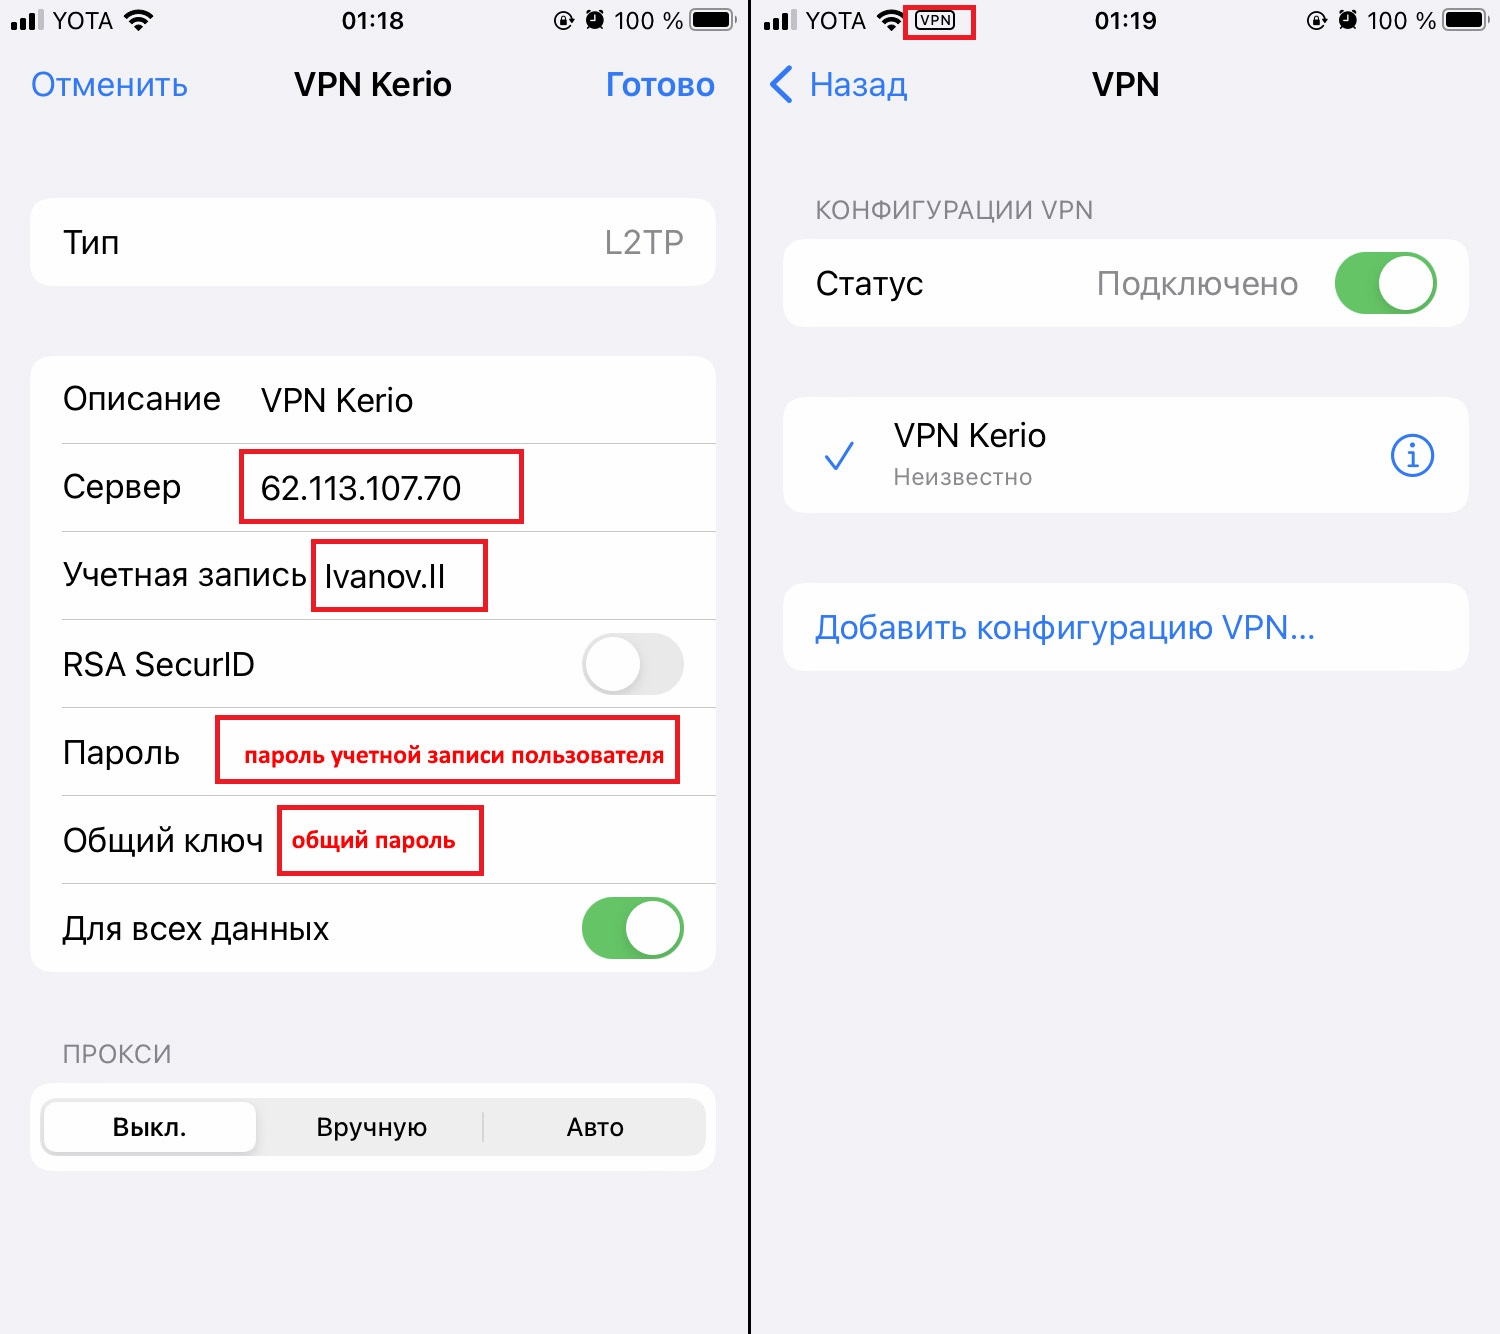 Подключения к VPN через iOS